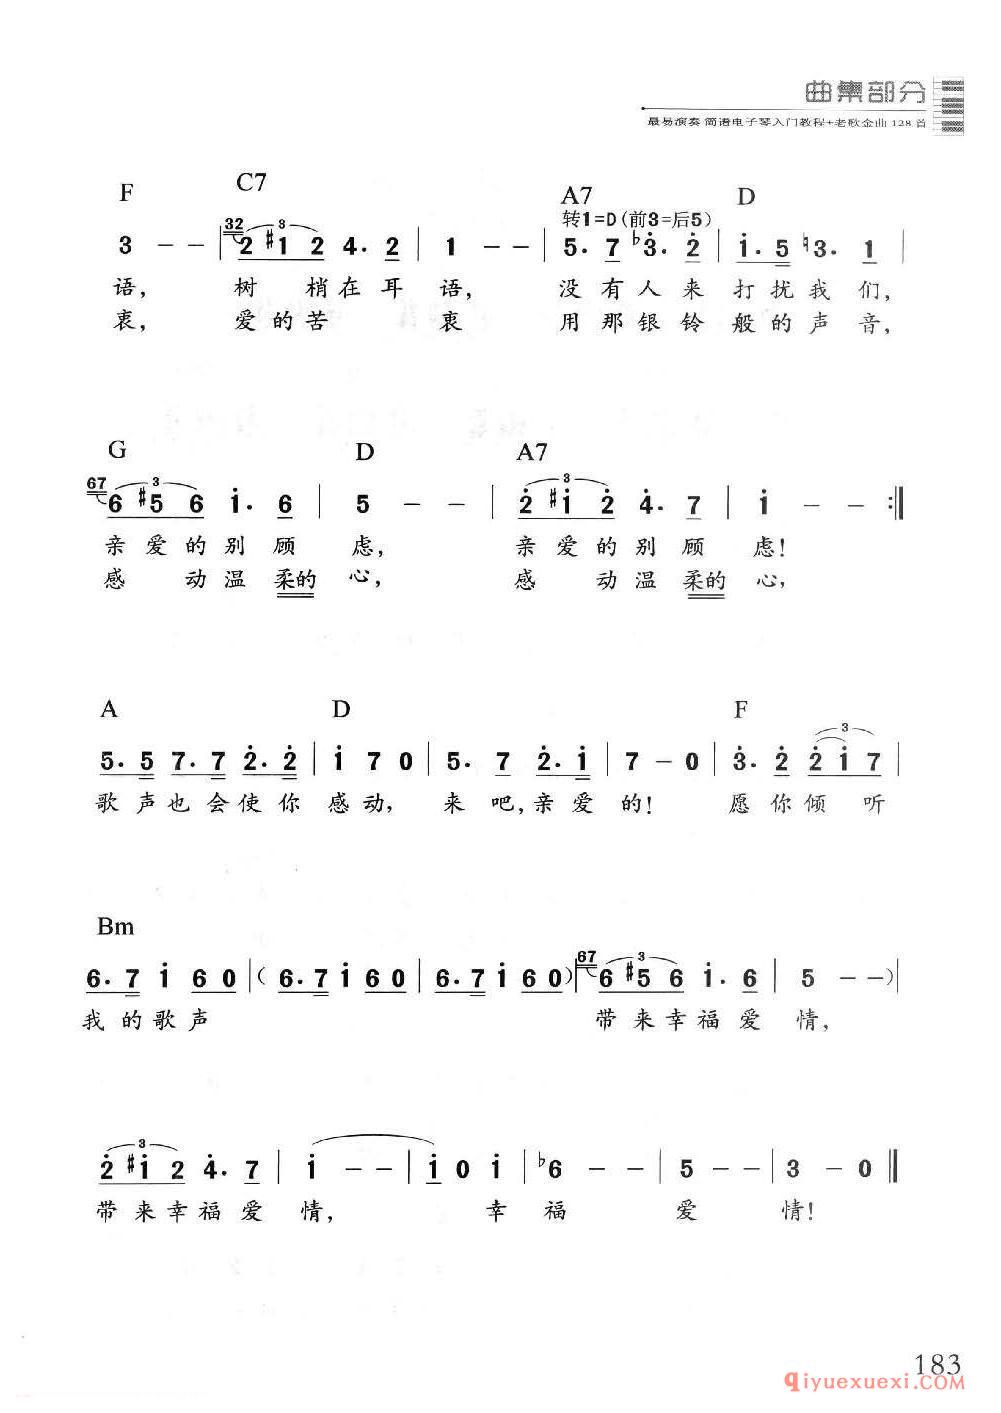 电子琴经典名曲谱 | 舒伯特小夜曲(1=C 2/4)简谱带和弦